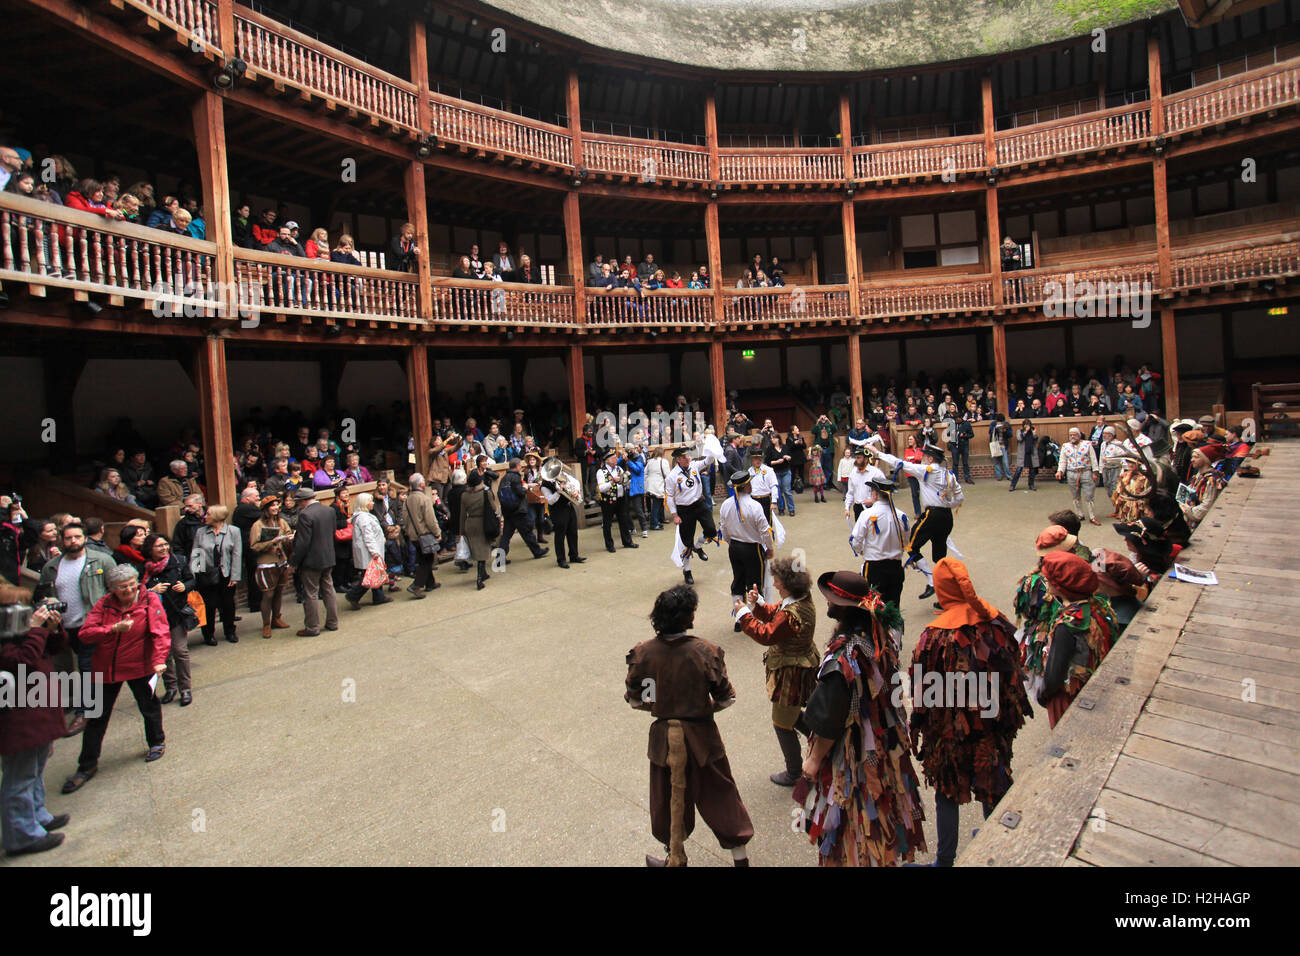 Beaucoup d'octobre Fête des vendanges à la Shakespeare's Globe, London, UK. Banque D'Images